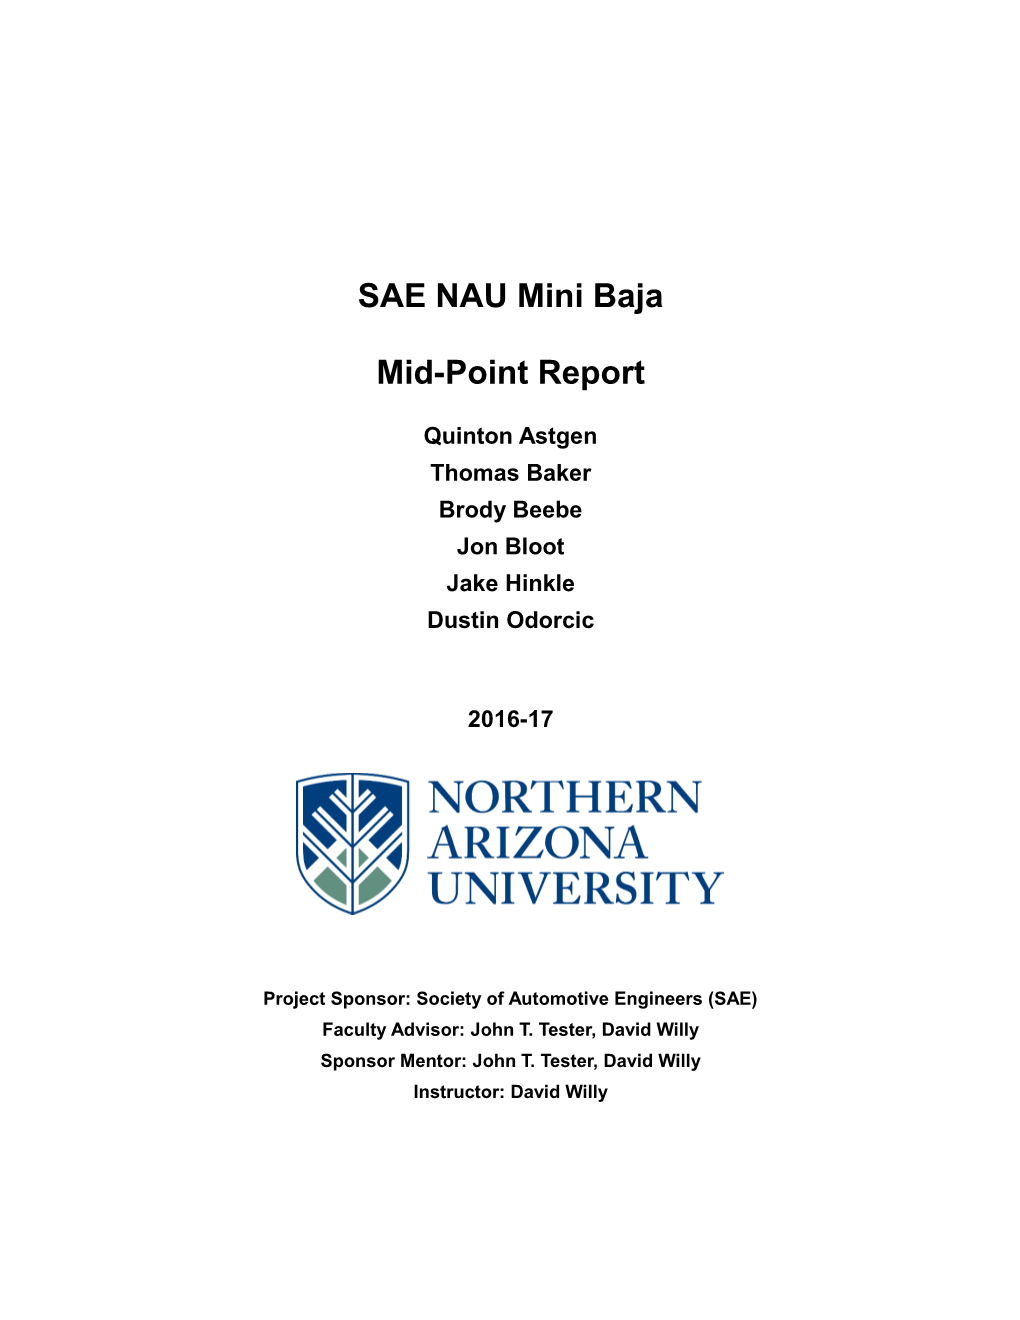 SAE NAU Mini Baja Mid-Point Report